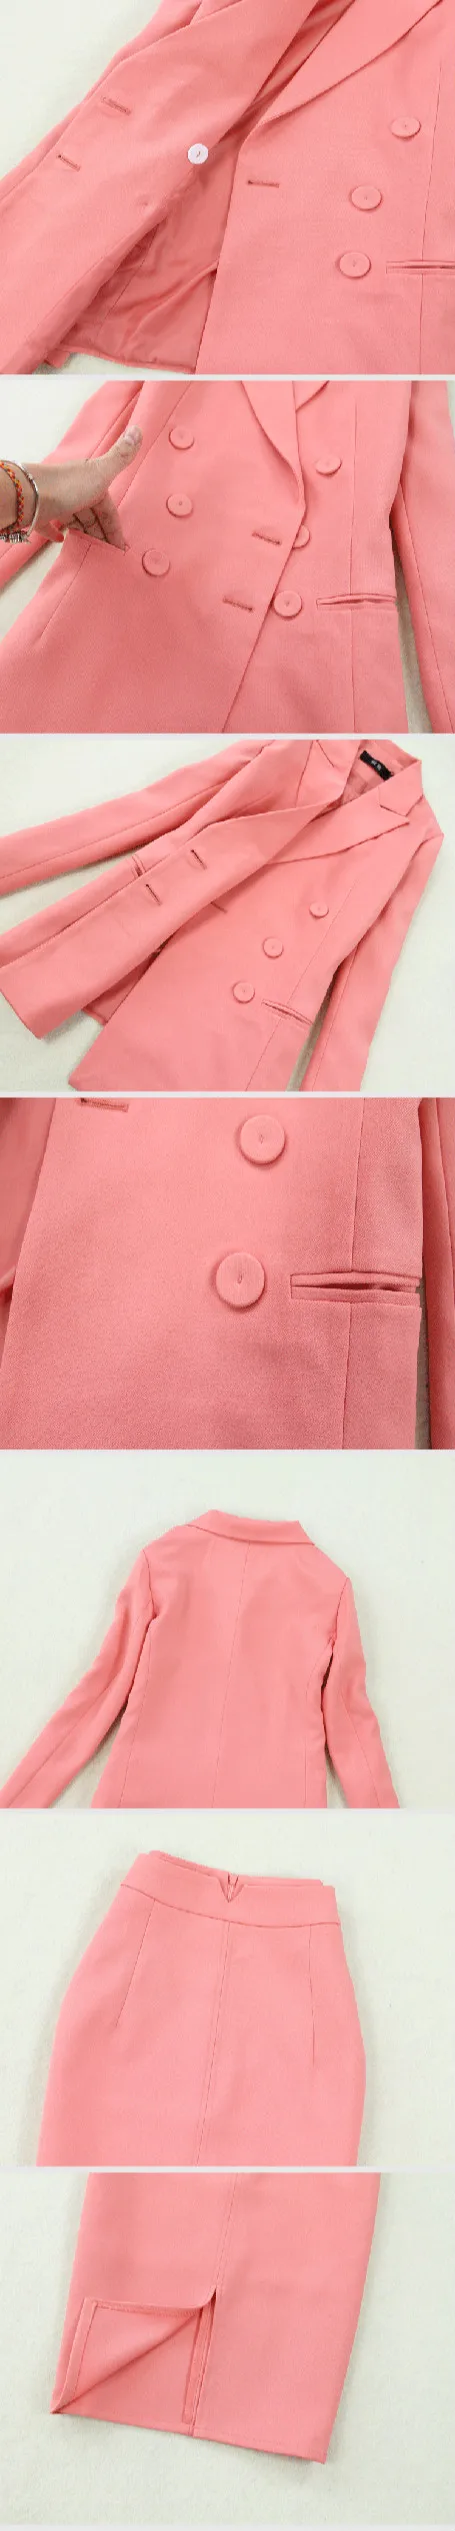 Женские костюмы 2019 Осень Новые женские большие размеры двубортный розовый костюм куртка сумка Бедро Сплит Половина длины юбка из двух